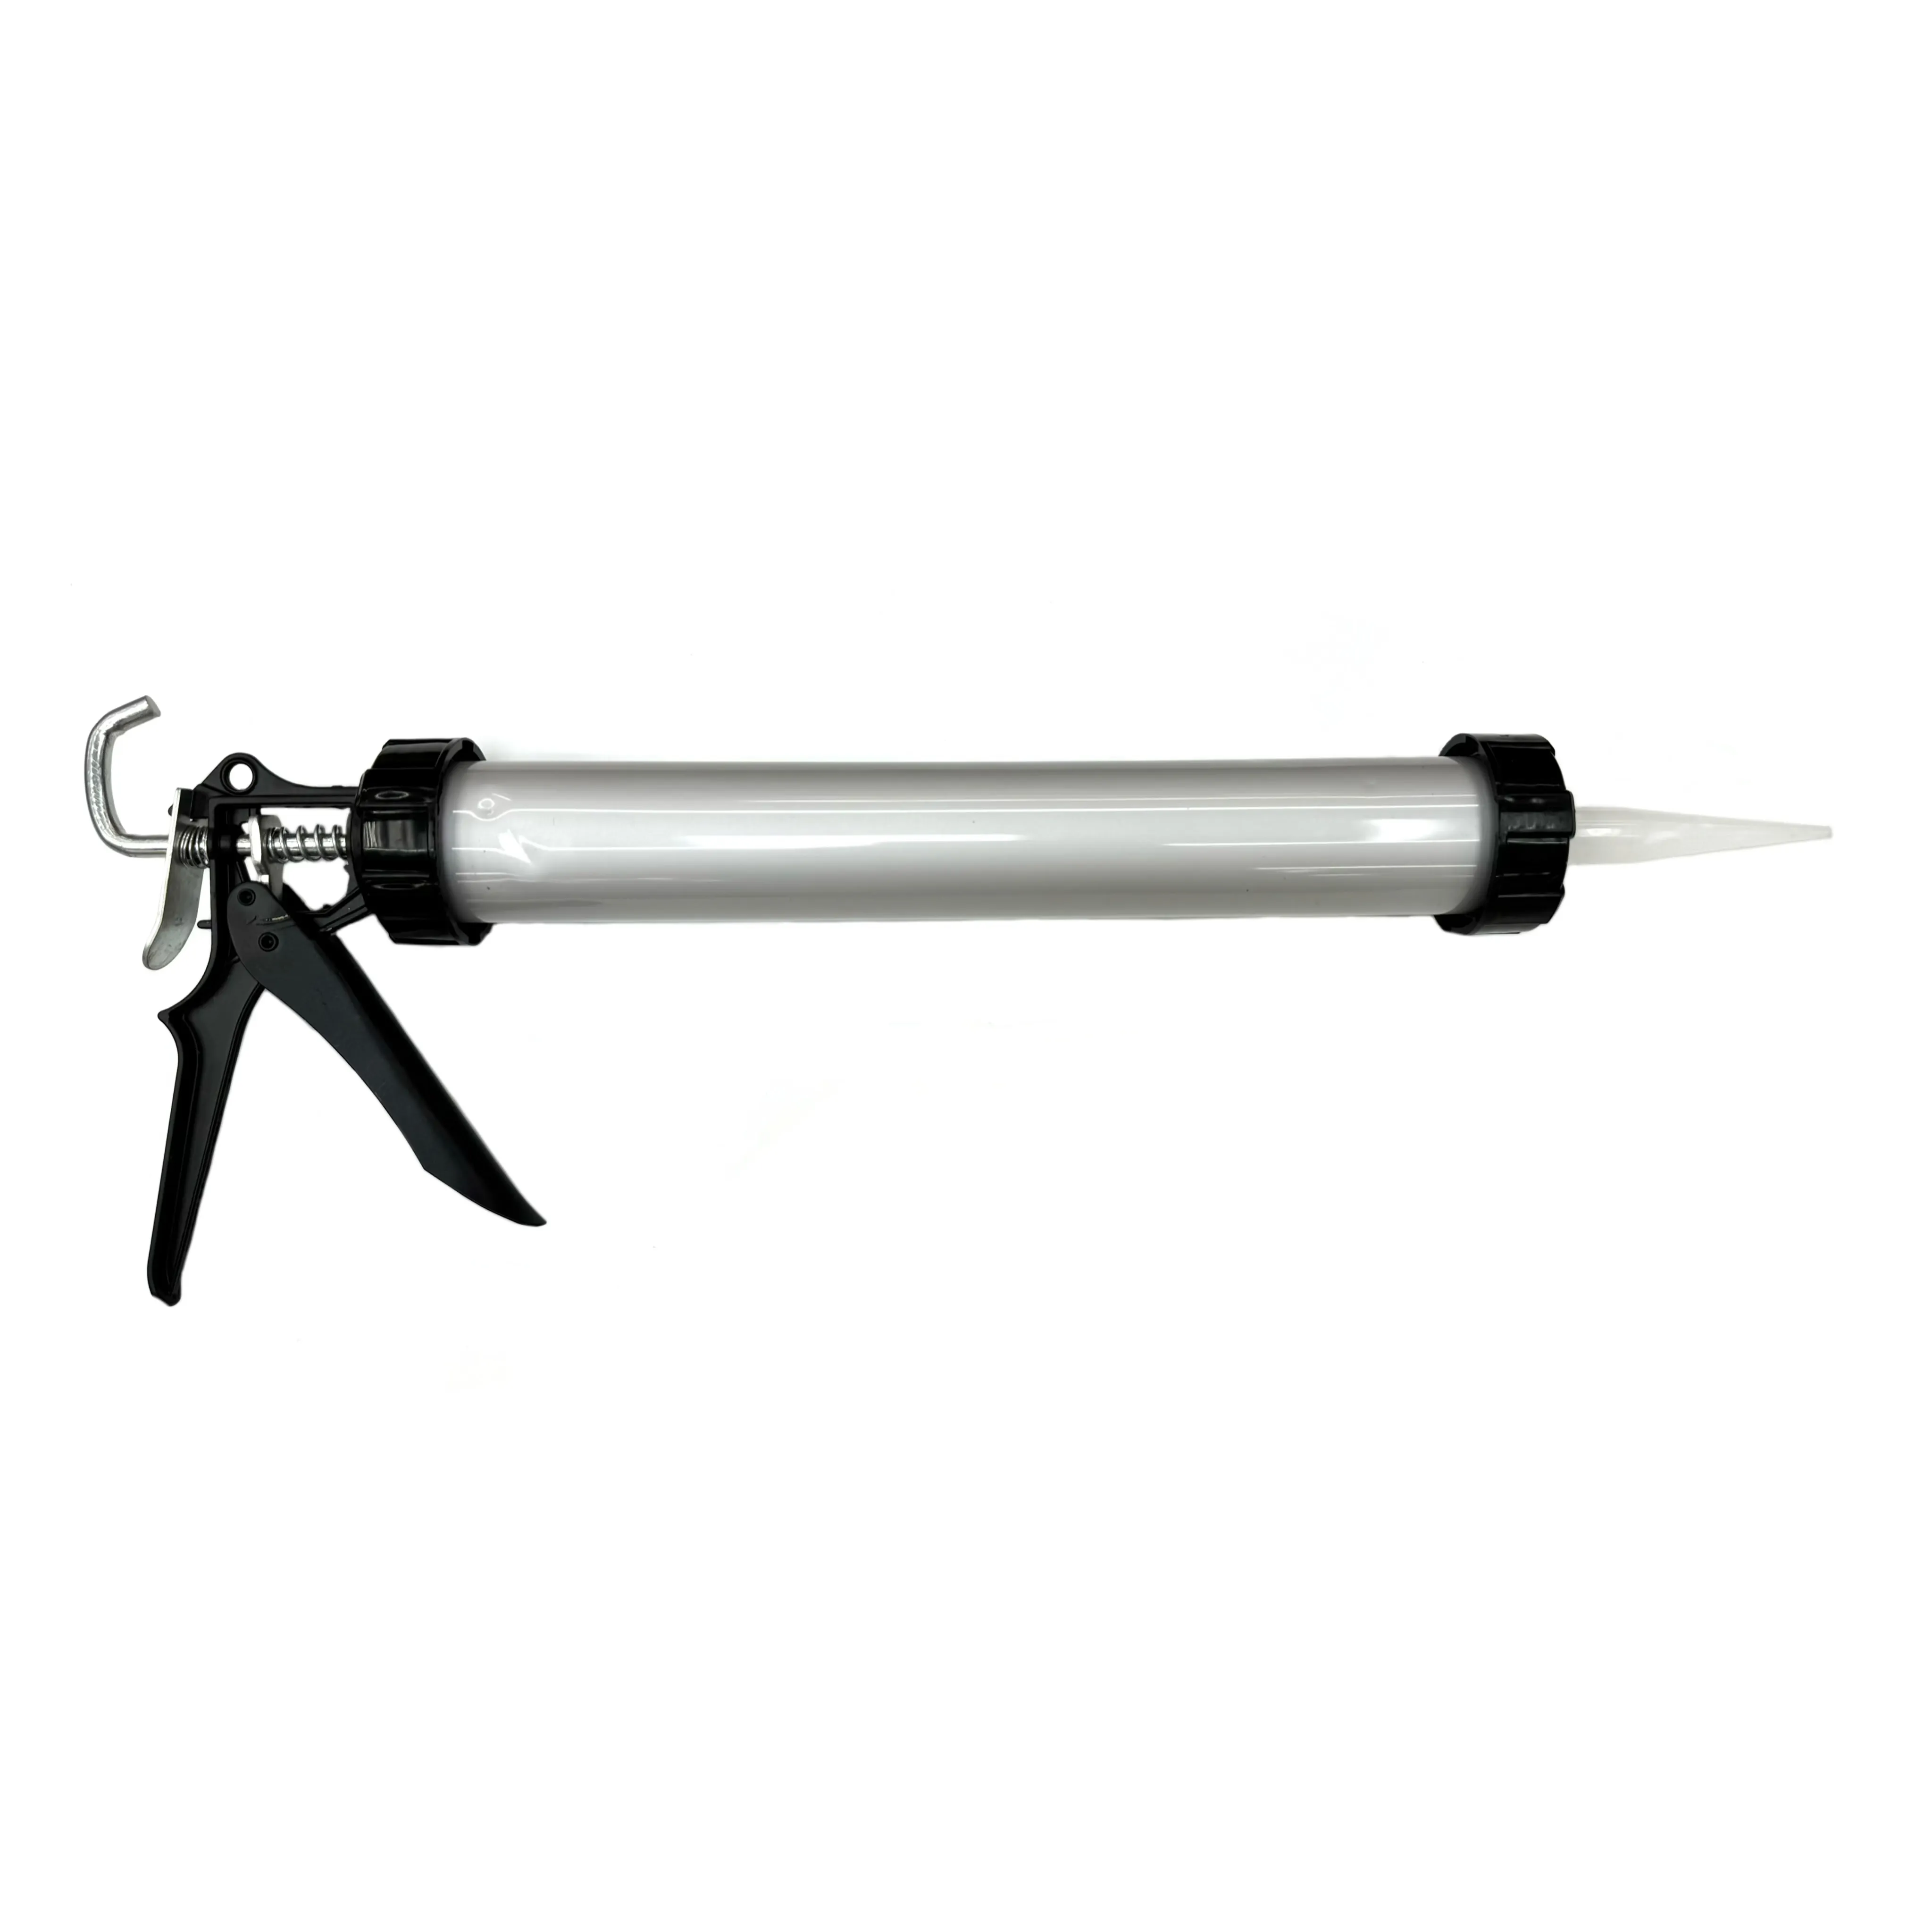 GK-L001 produttore professionale di pistola per colla di vetro per sigillatura cordless di costruzione pistone silicone per calcestruzzo sigillante